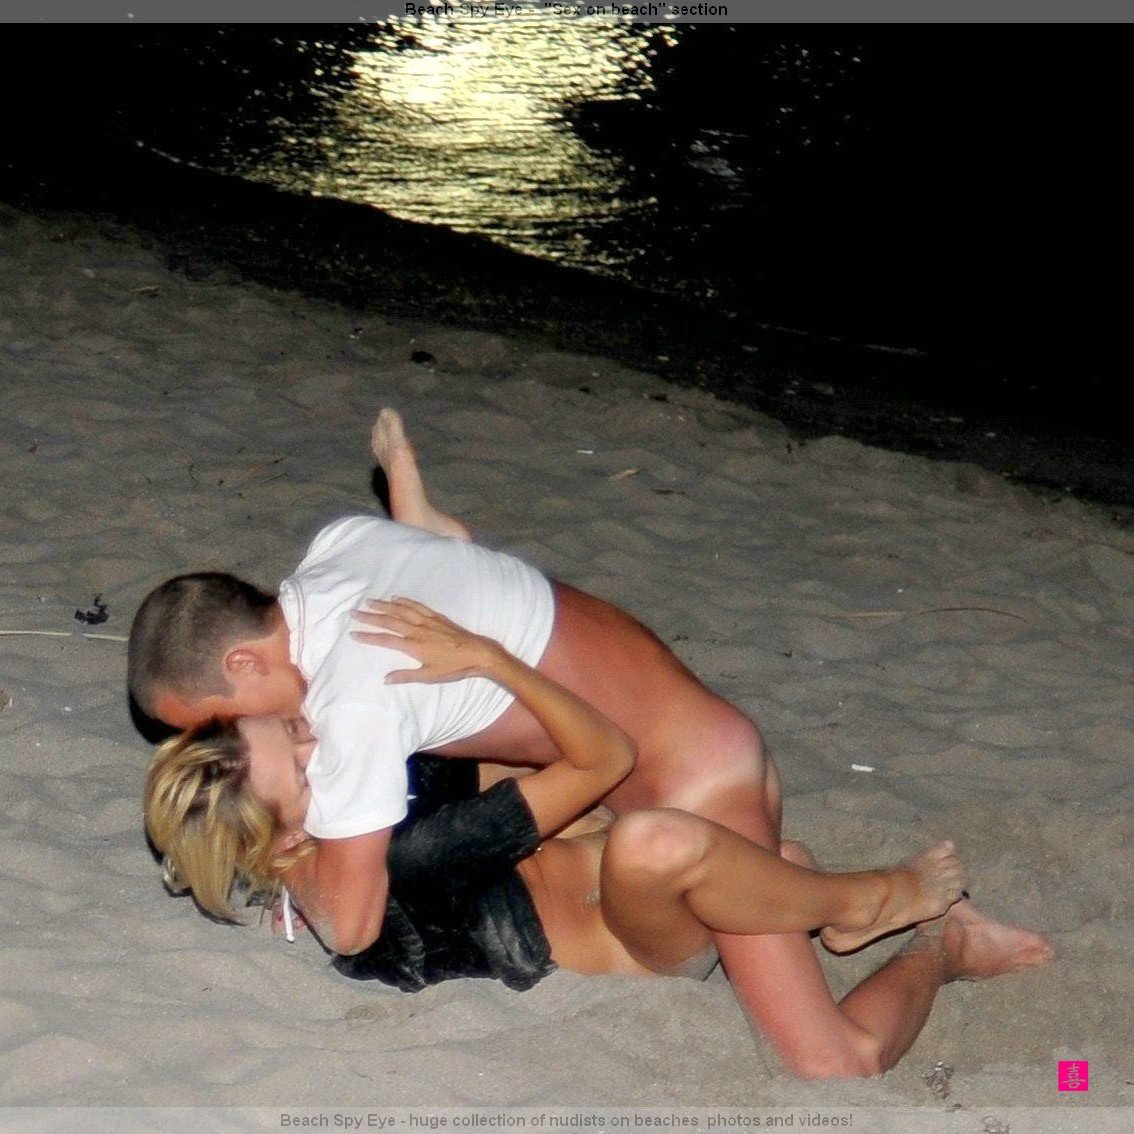 https://pbs.bulkjerk.com/39/3926/pictures/4001-7-voyeur-beach-sex.jpg